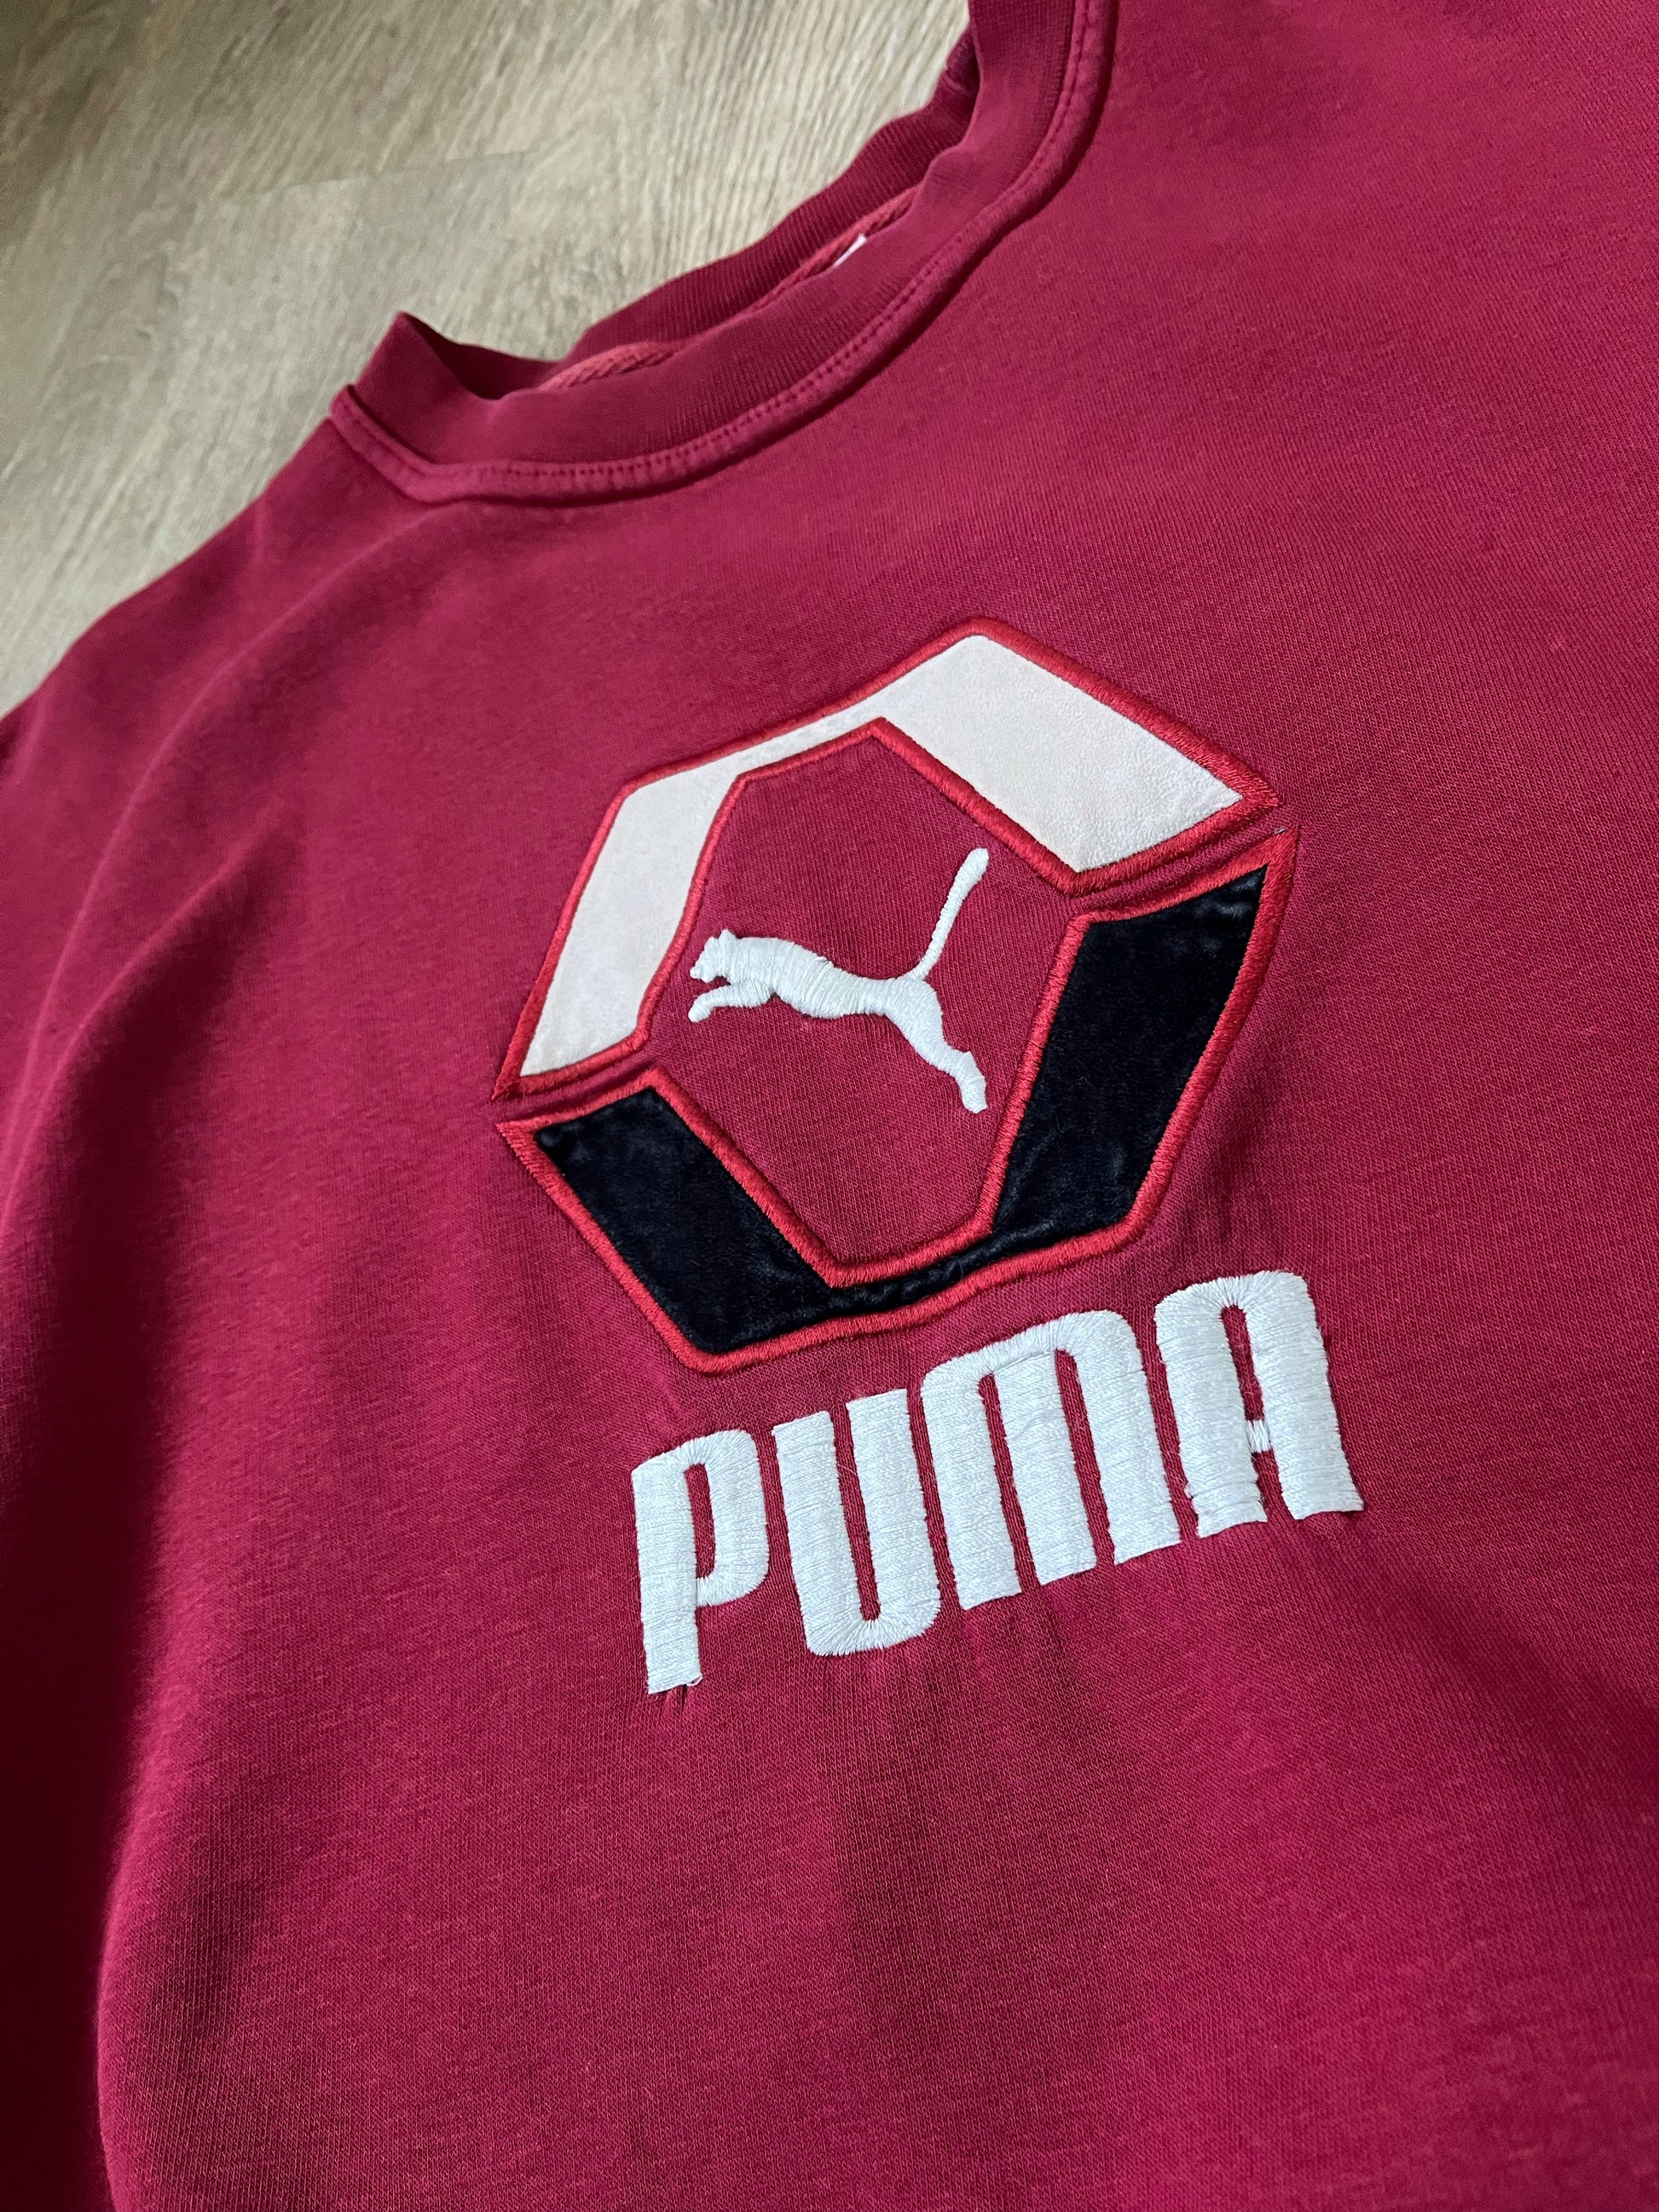 Puma Vintage 90s Embroidered Sweatshirt